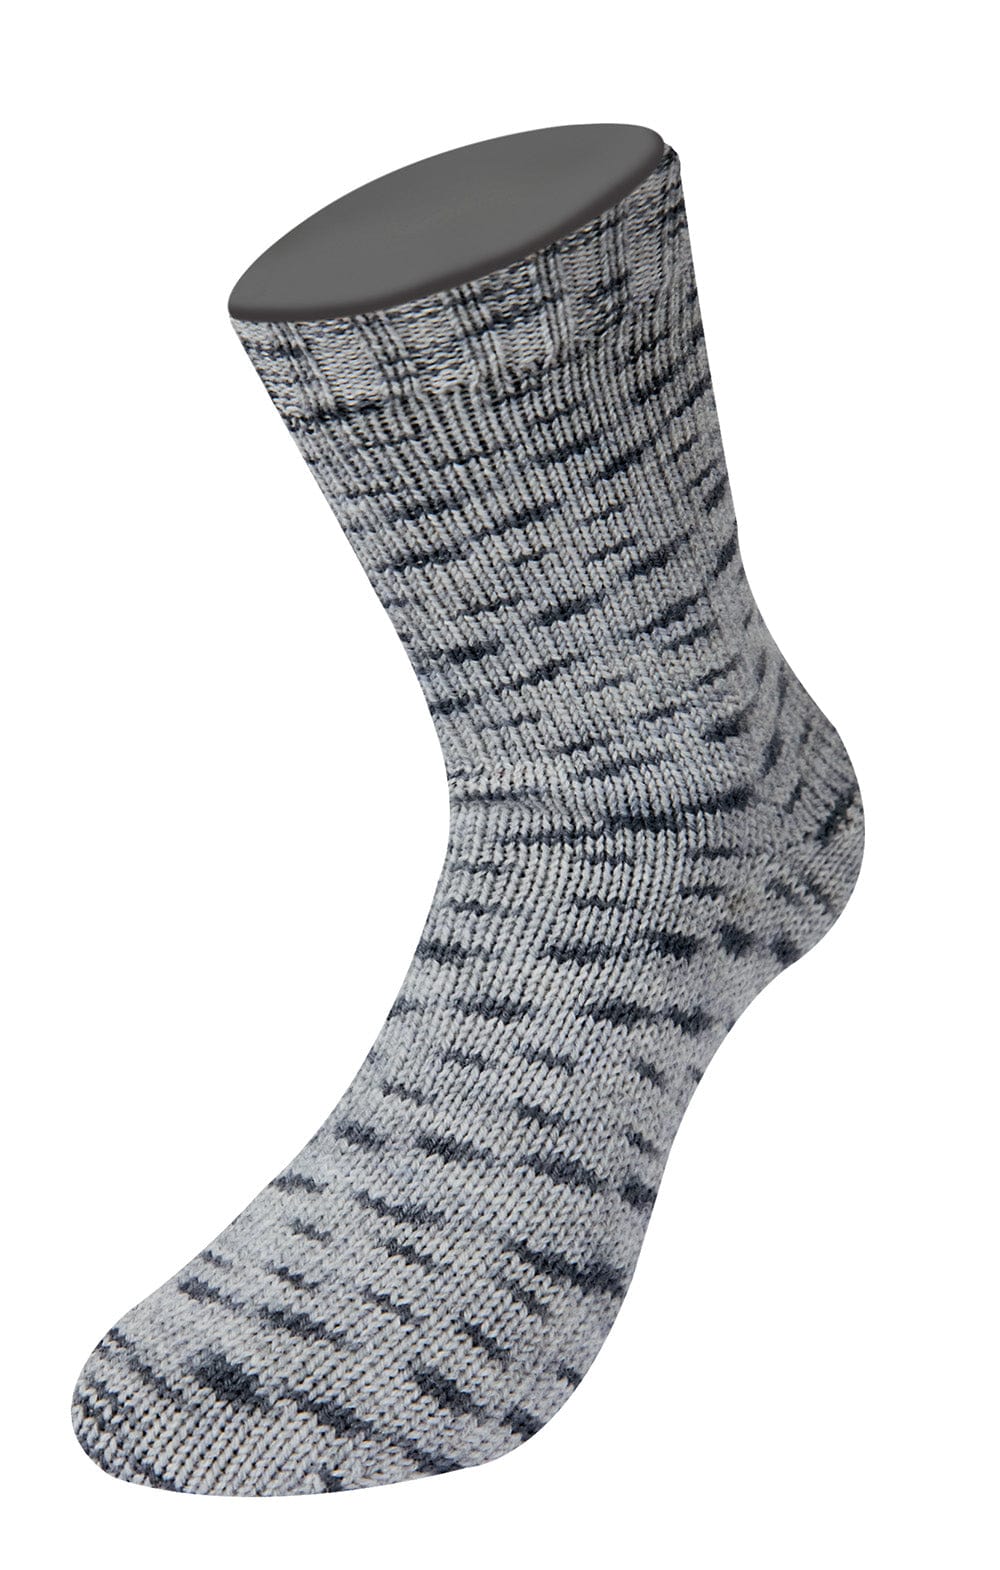 Socken 4-fach - MEILENWEIT 100 DENIM MIX - Strickset von LANA GROSSA jetzt online kaufen bei OONIQUE